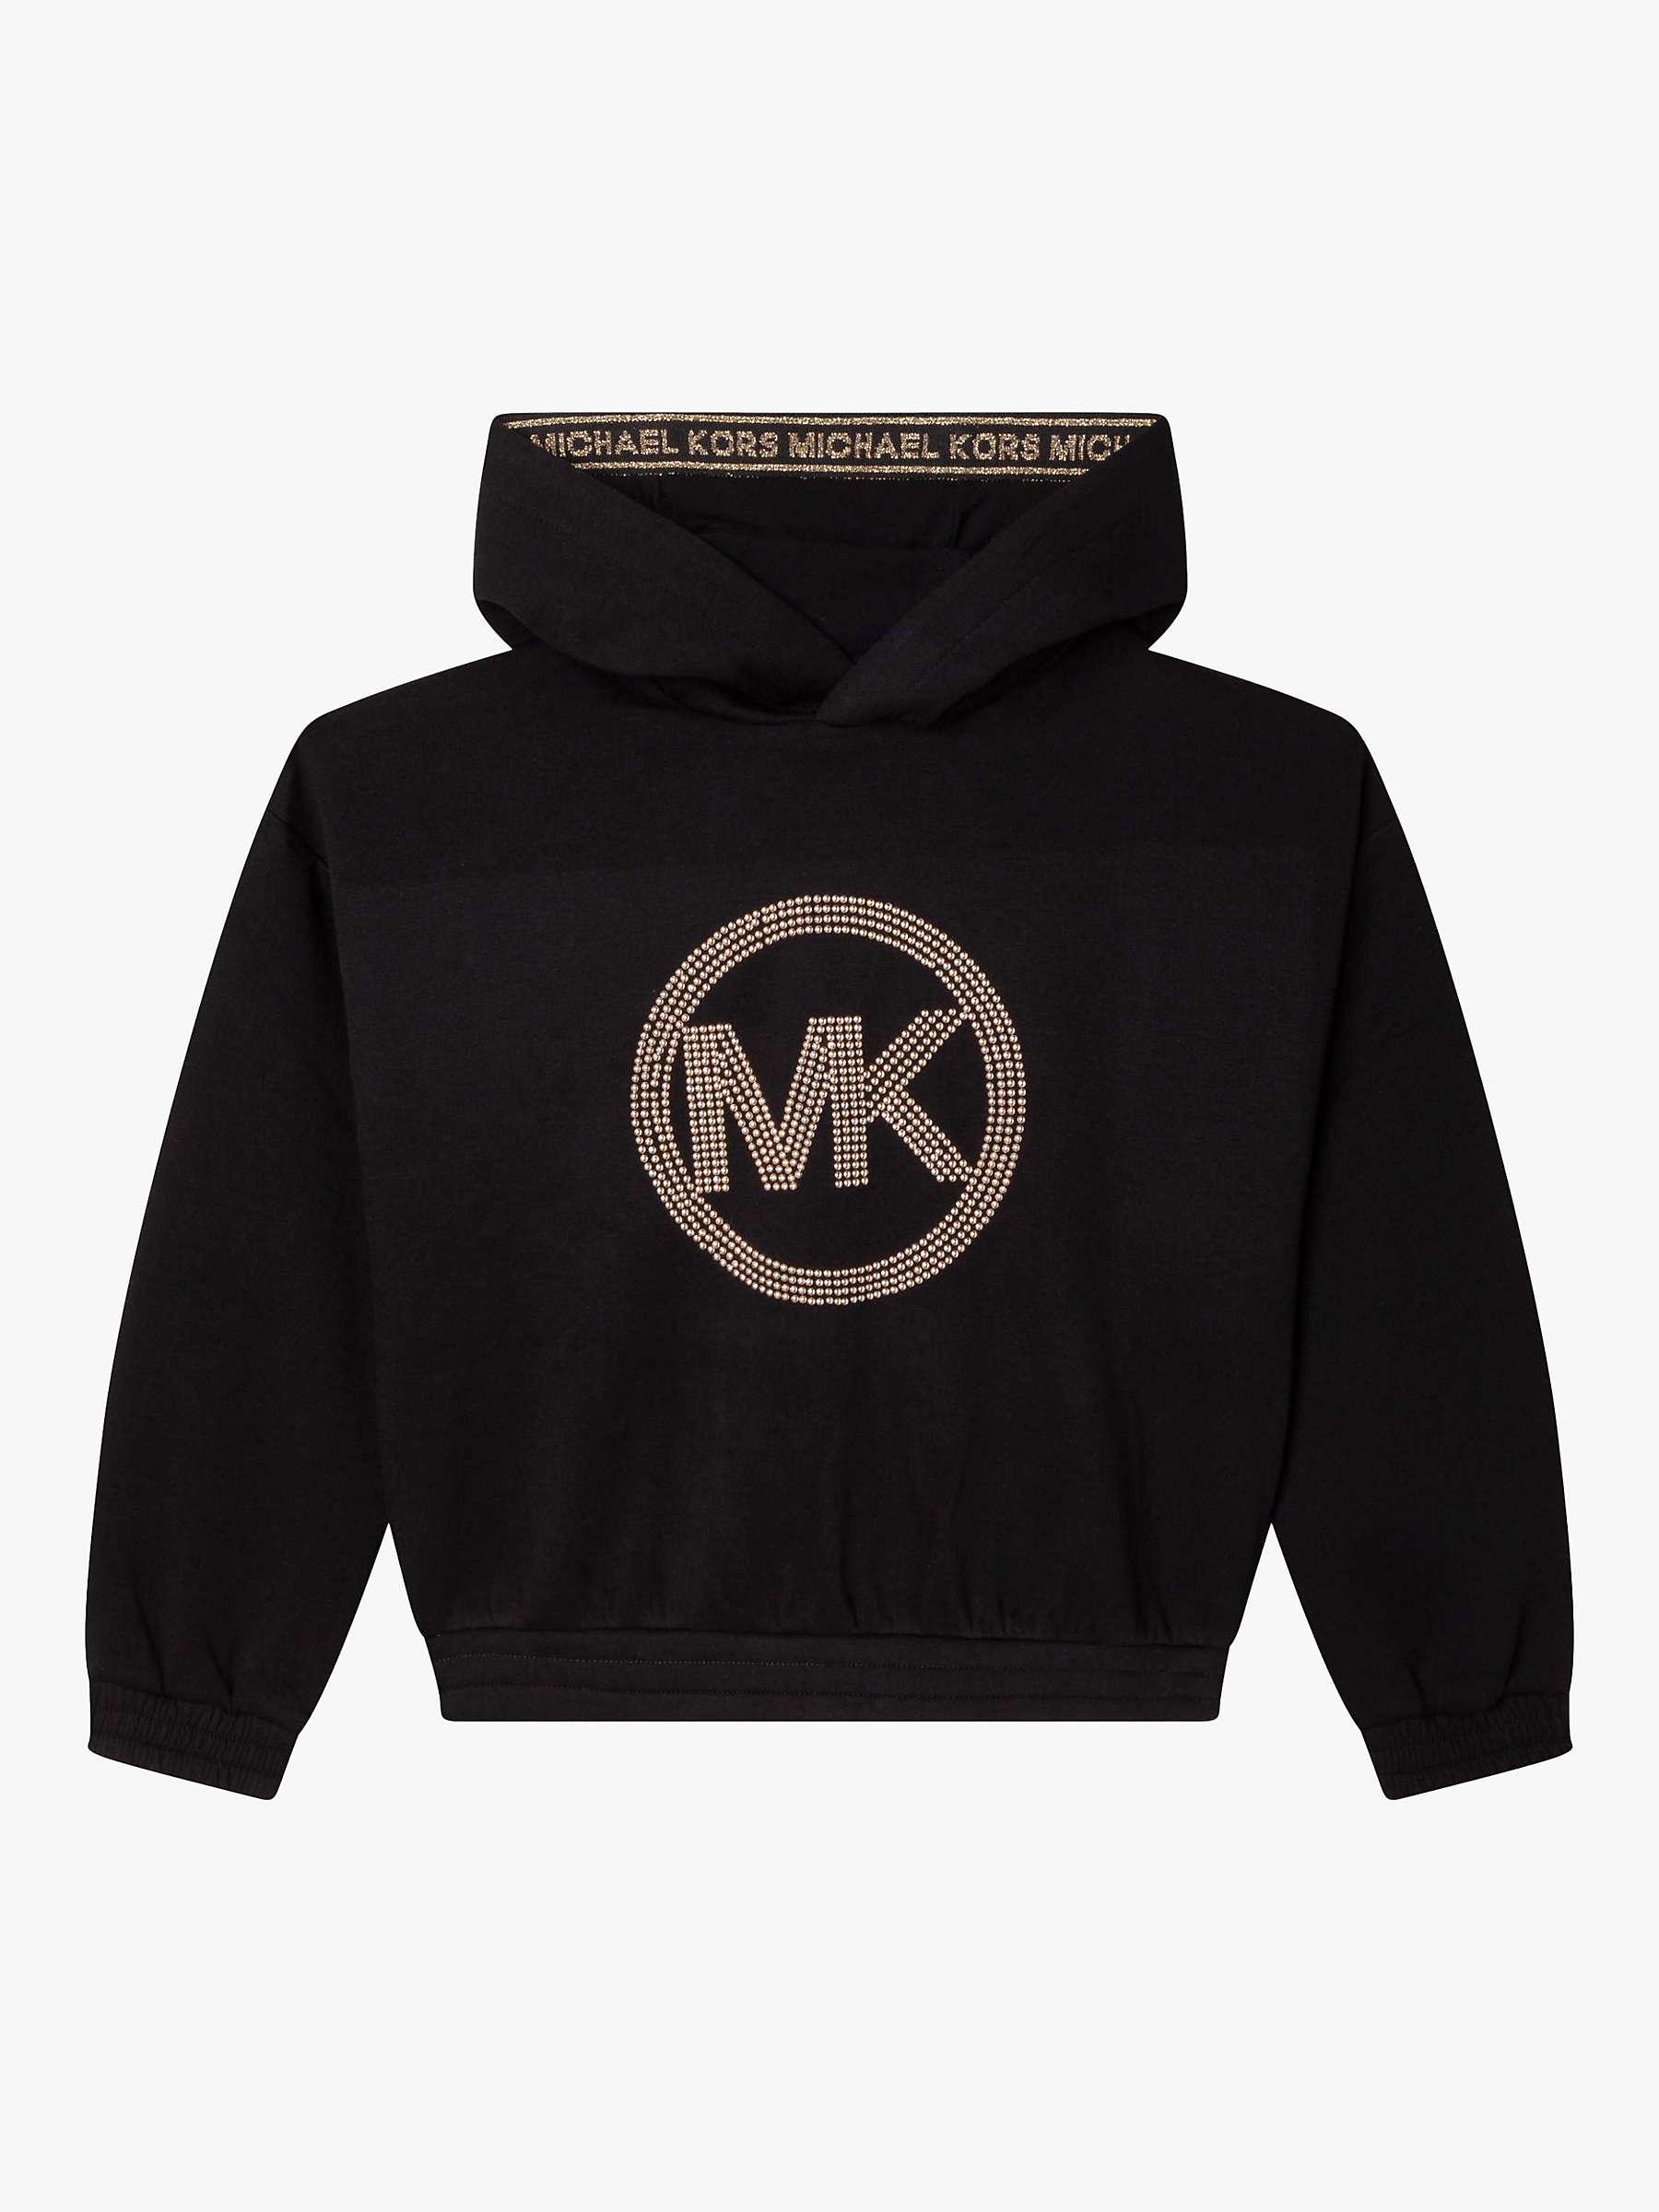 Buy Michael Kors Kids' Stud Logo Hoodie, Black Online at johnlewis.com